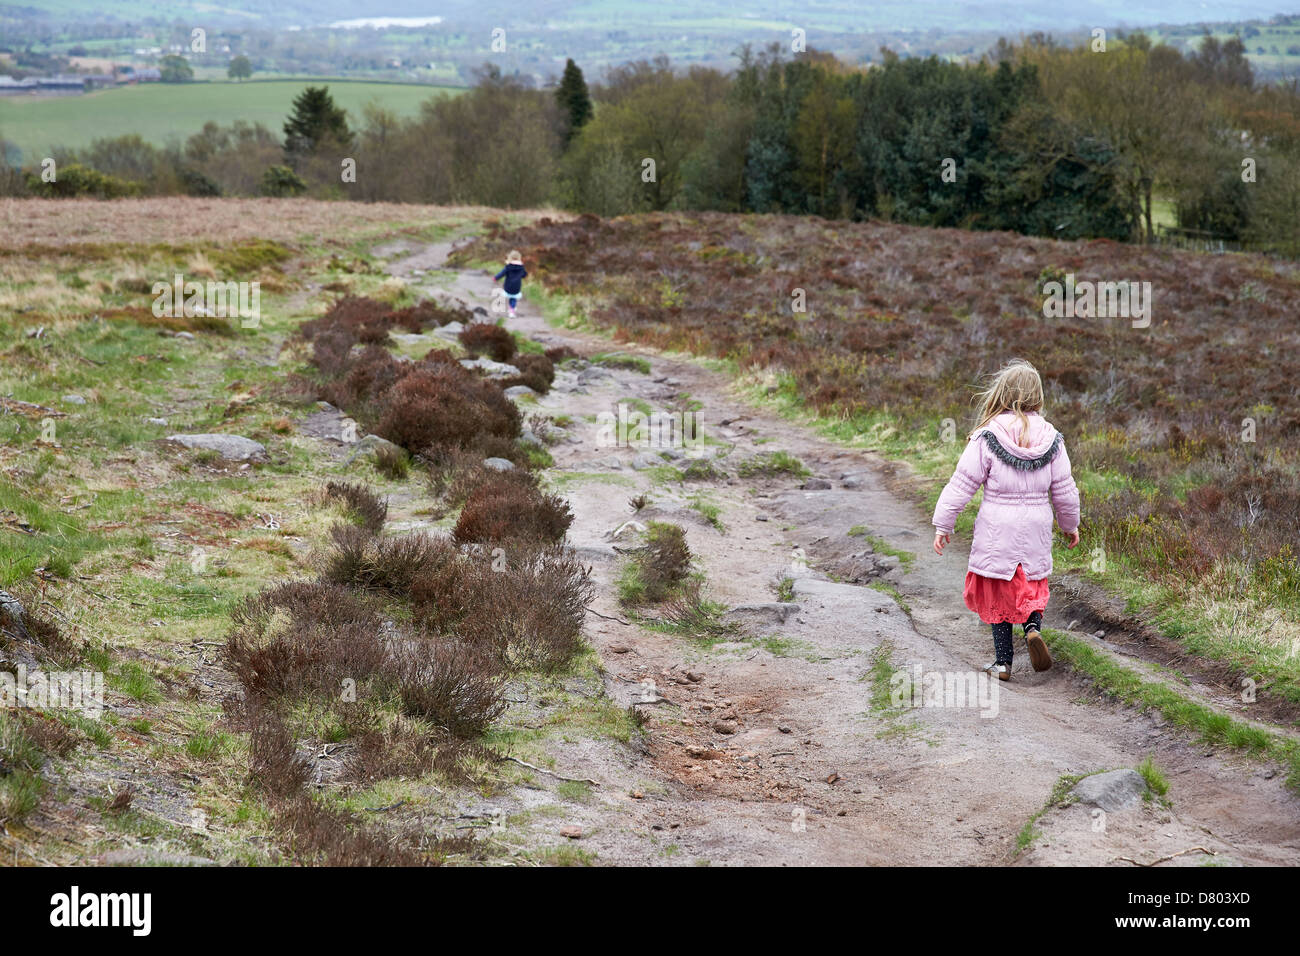 Los niños disfrutan de un día fuera a jugar y explorar en la campiña de Cheshire, Reino Unido Foto de stock